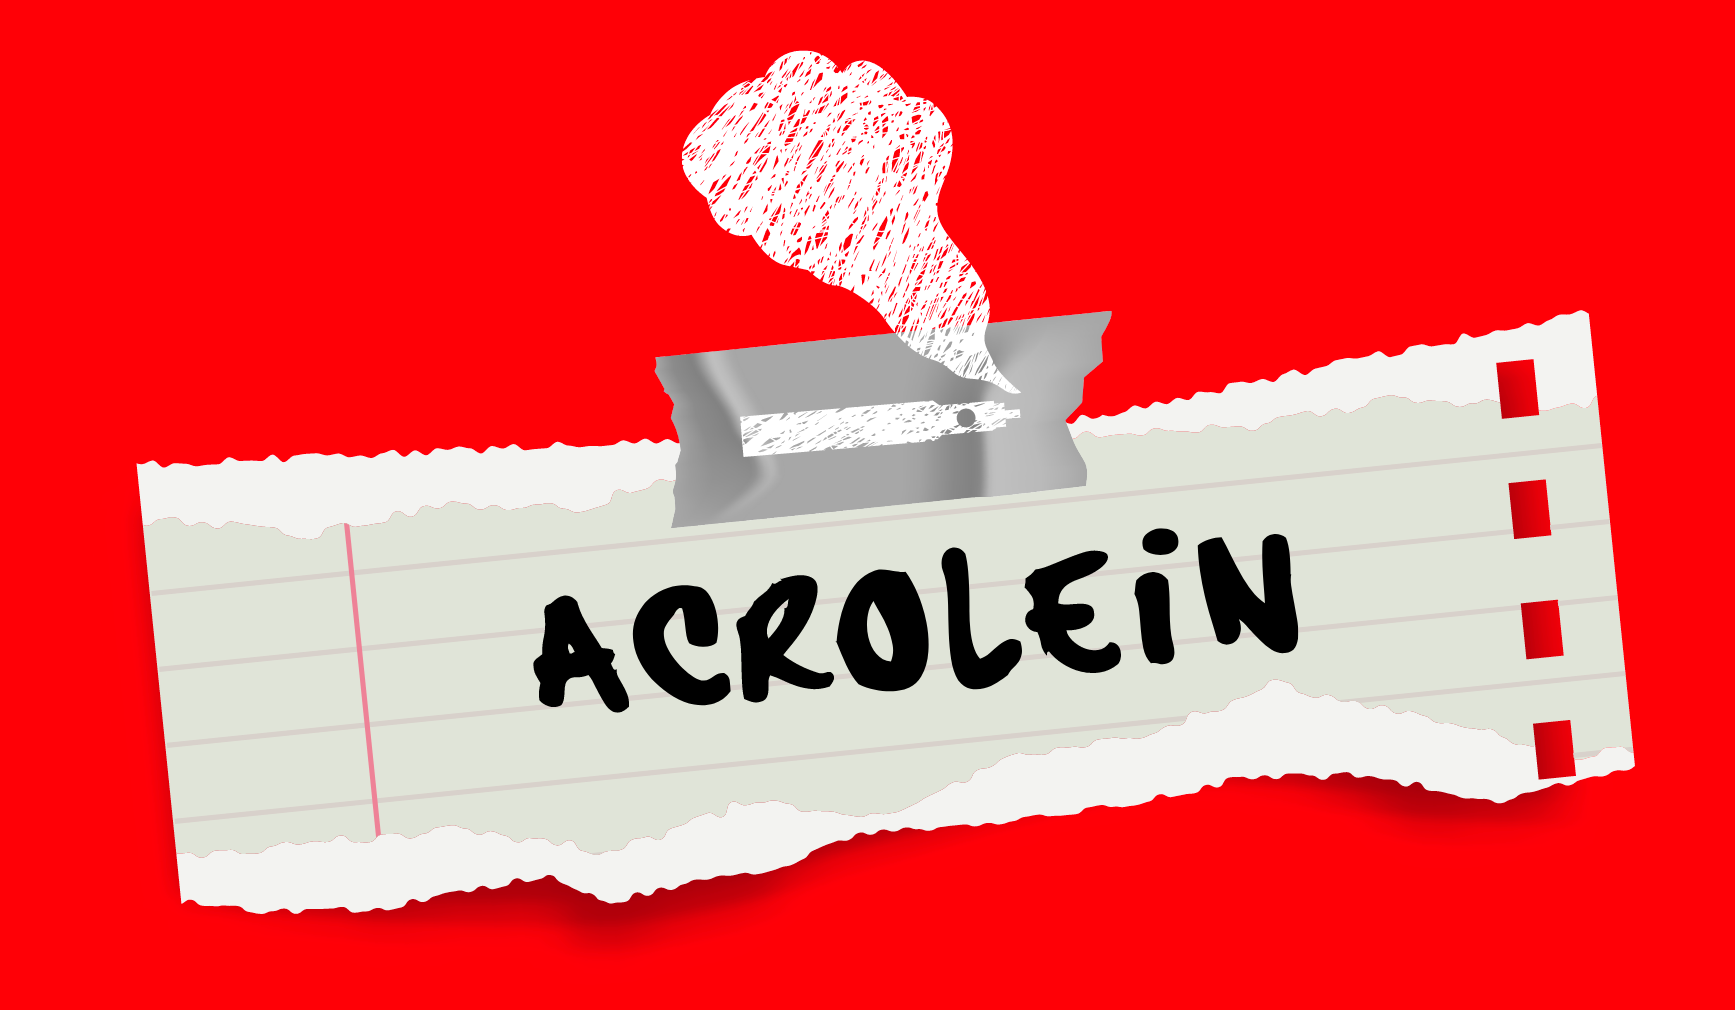 Acrolein